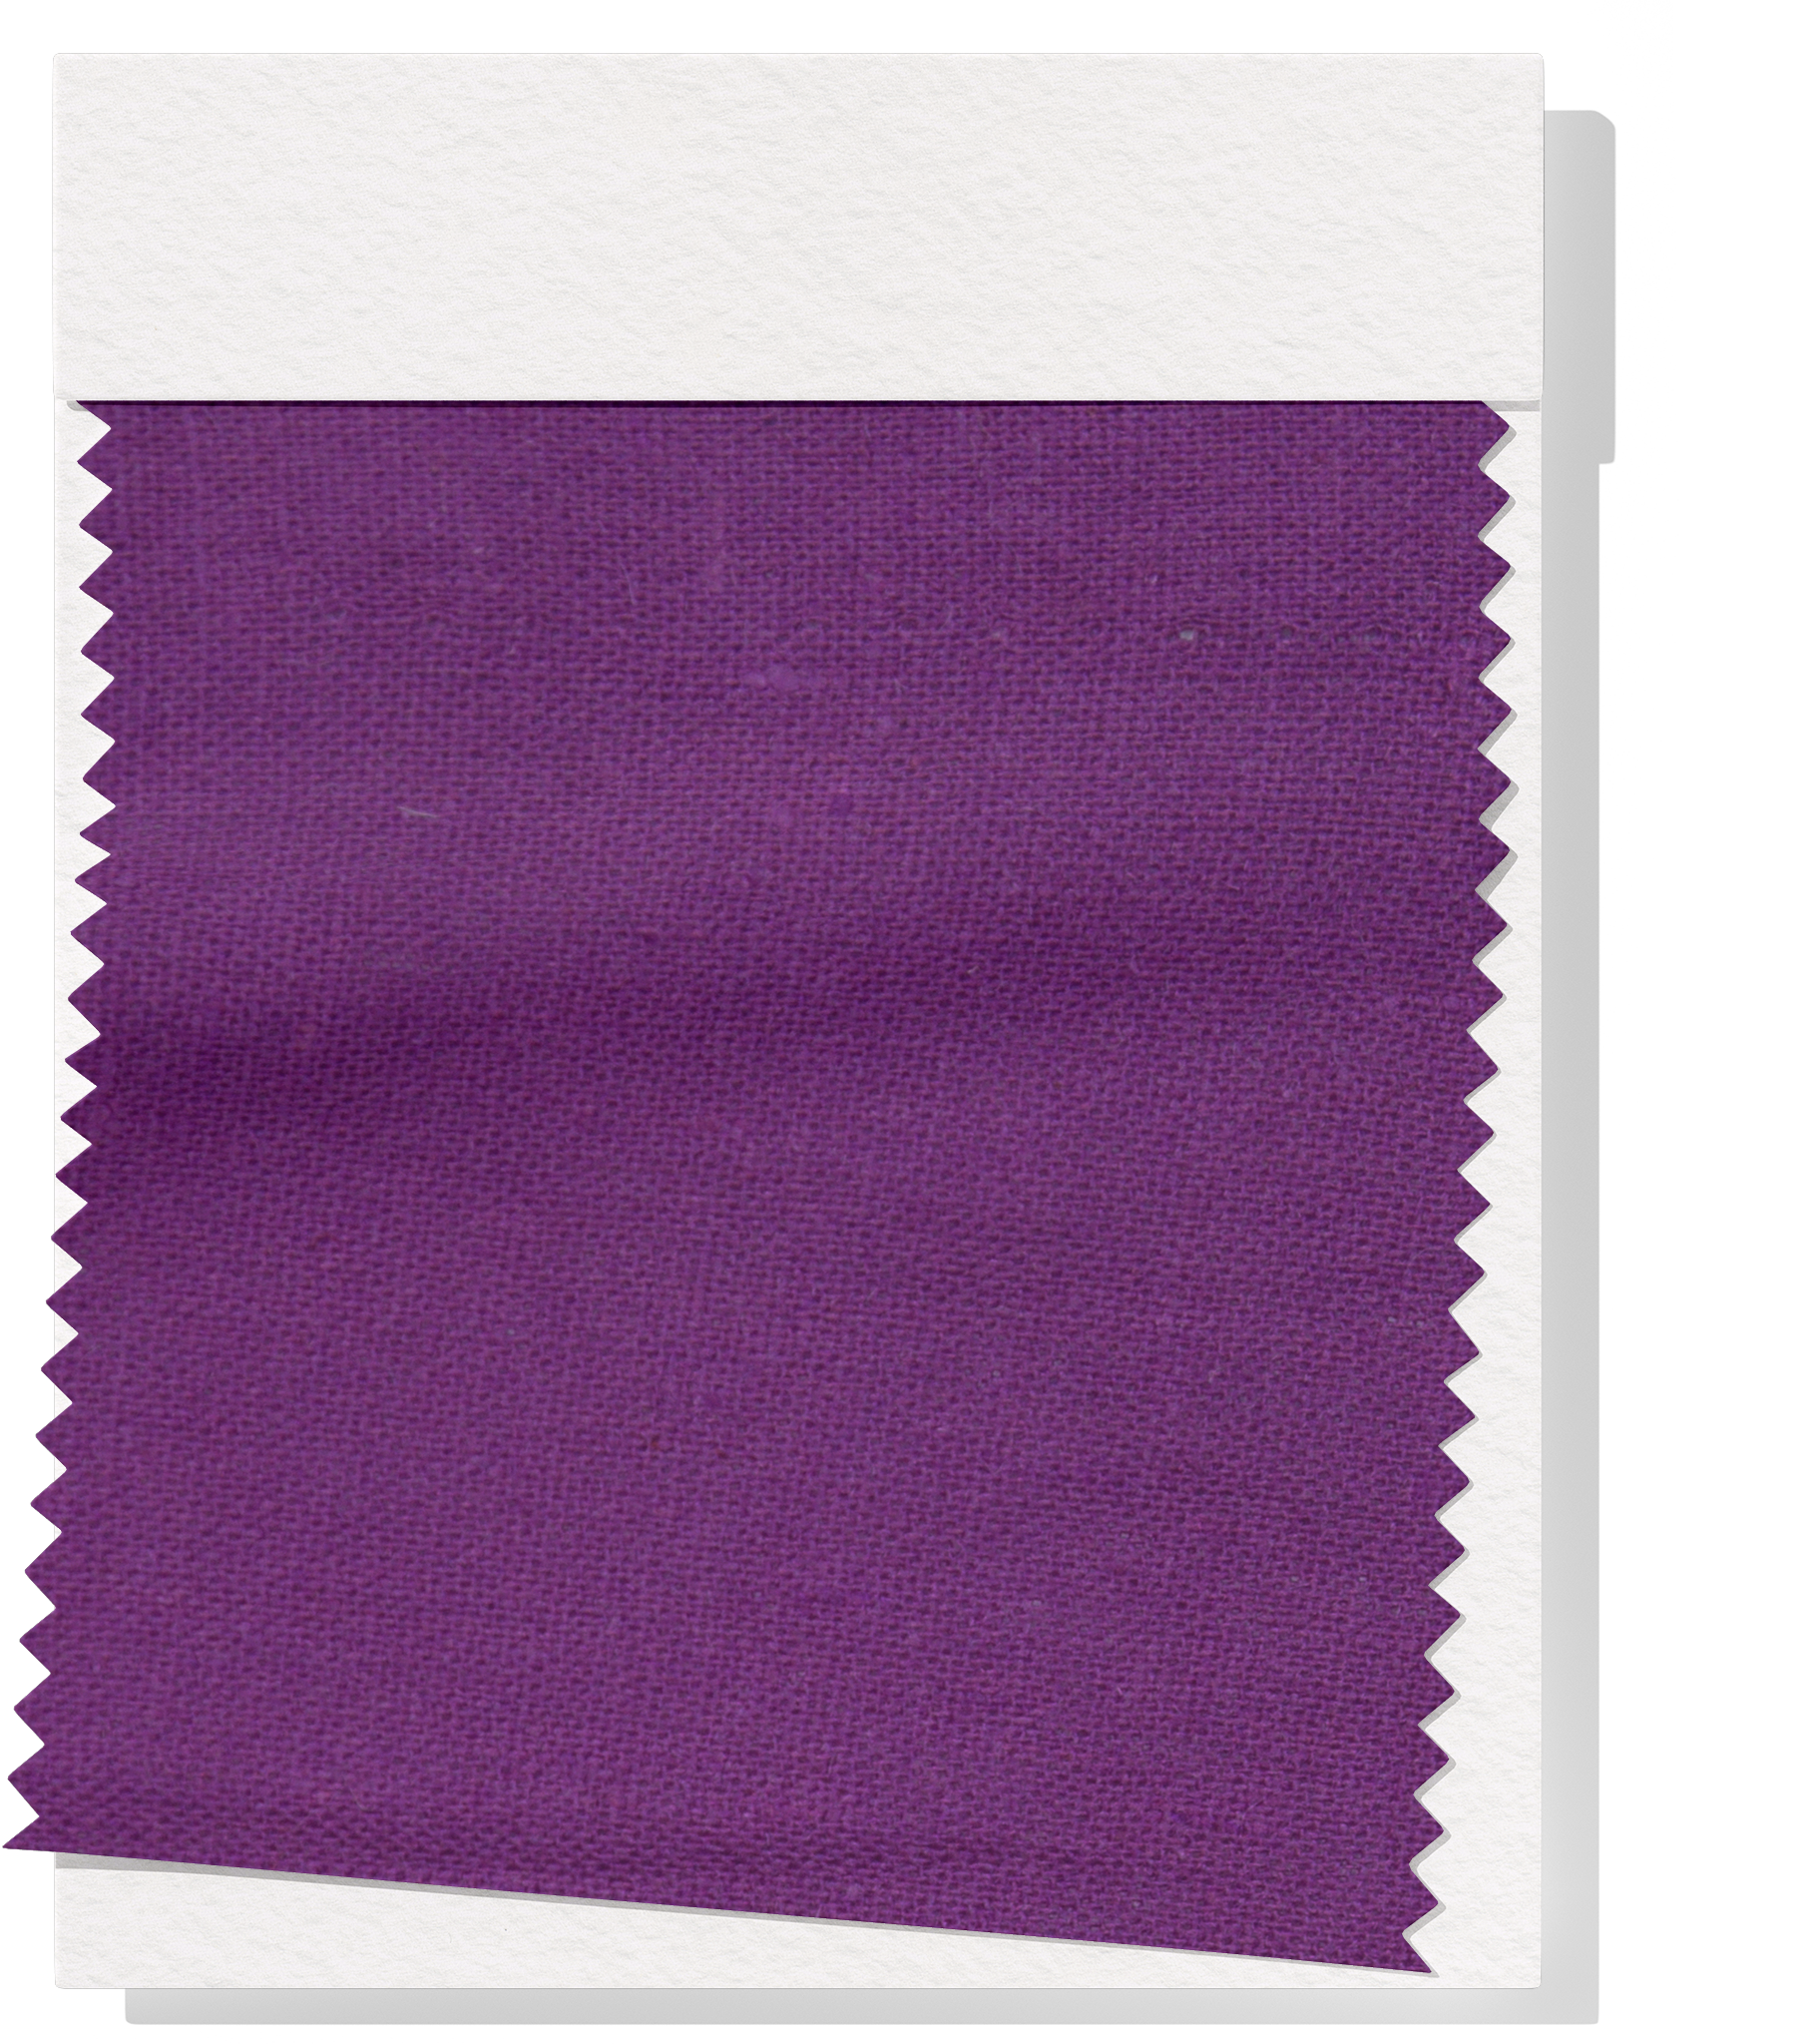 Linen / Cotton $14.00p/m - Dewberry Purple